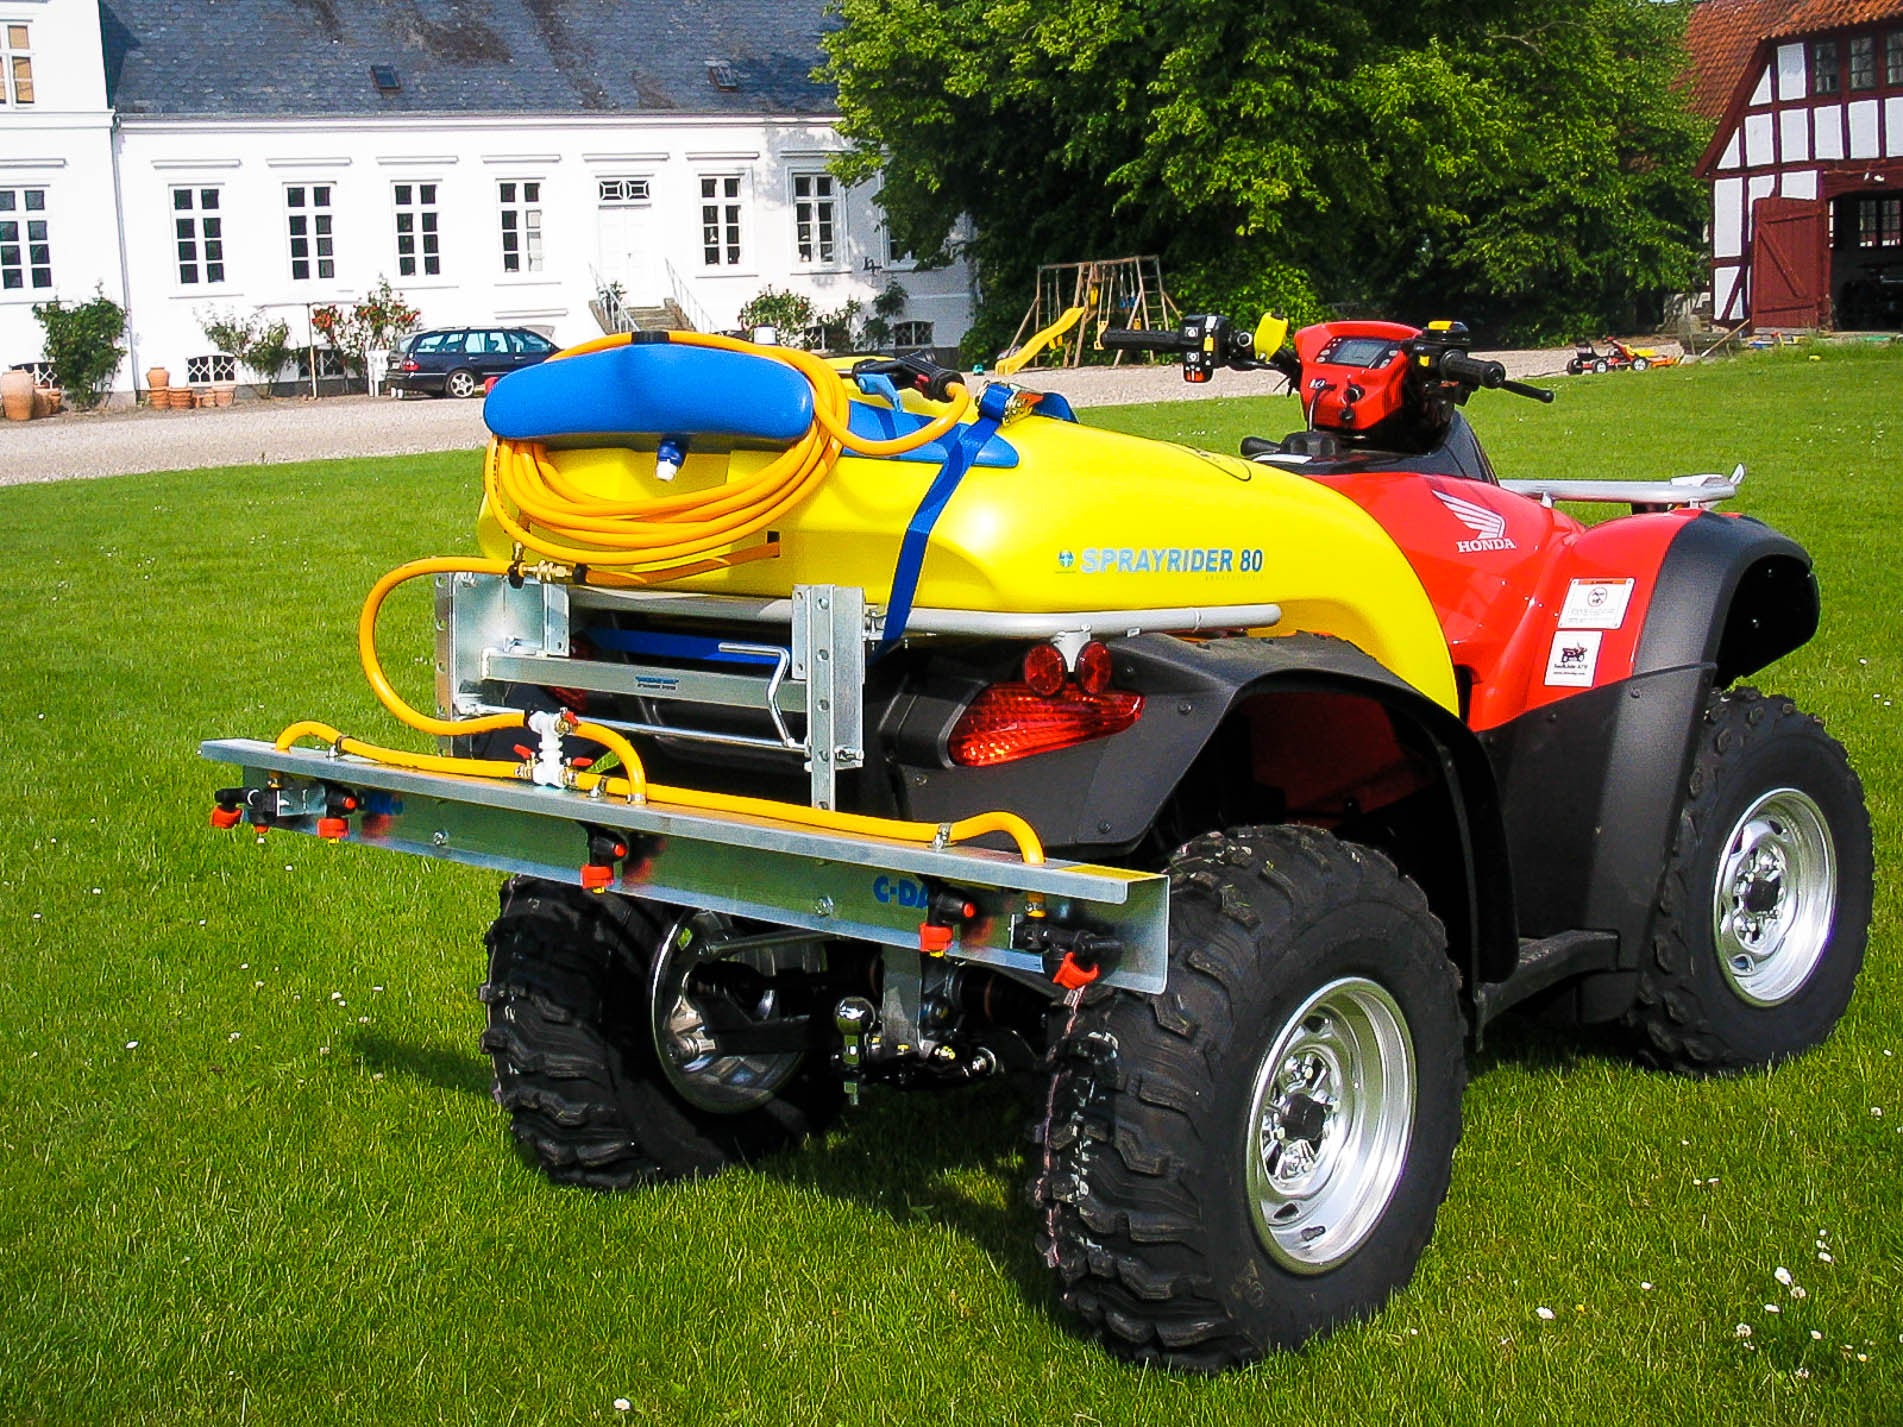 C-Dax Sprayrider 80 - Rødkilde ATV